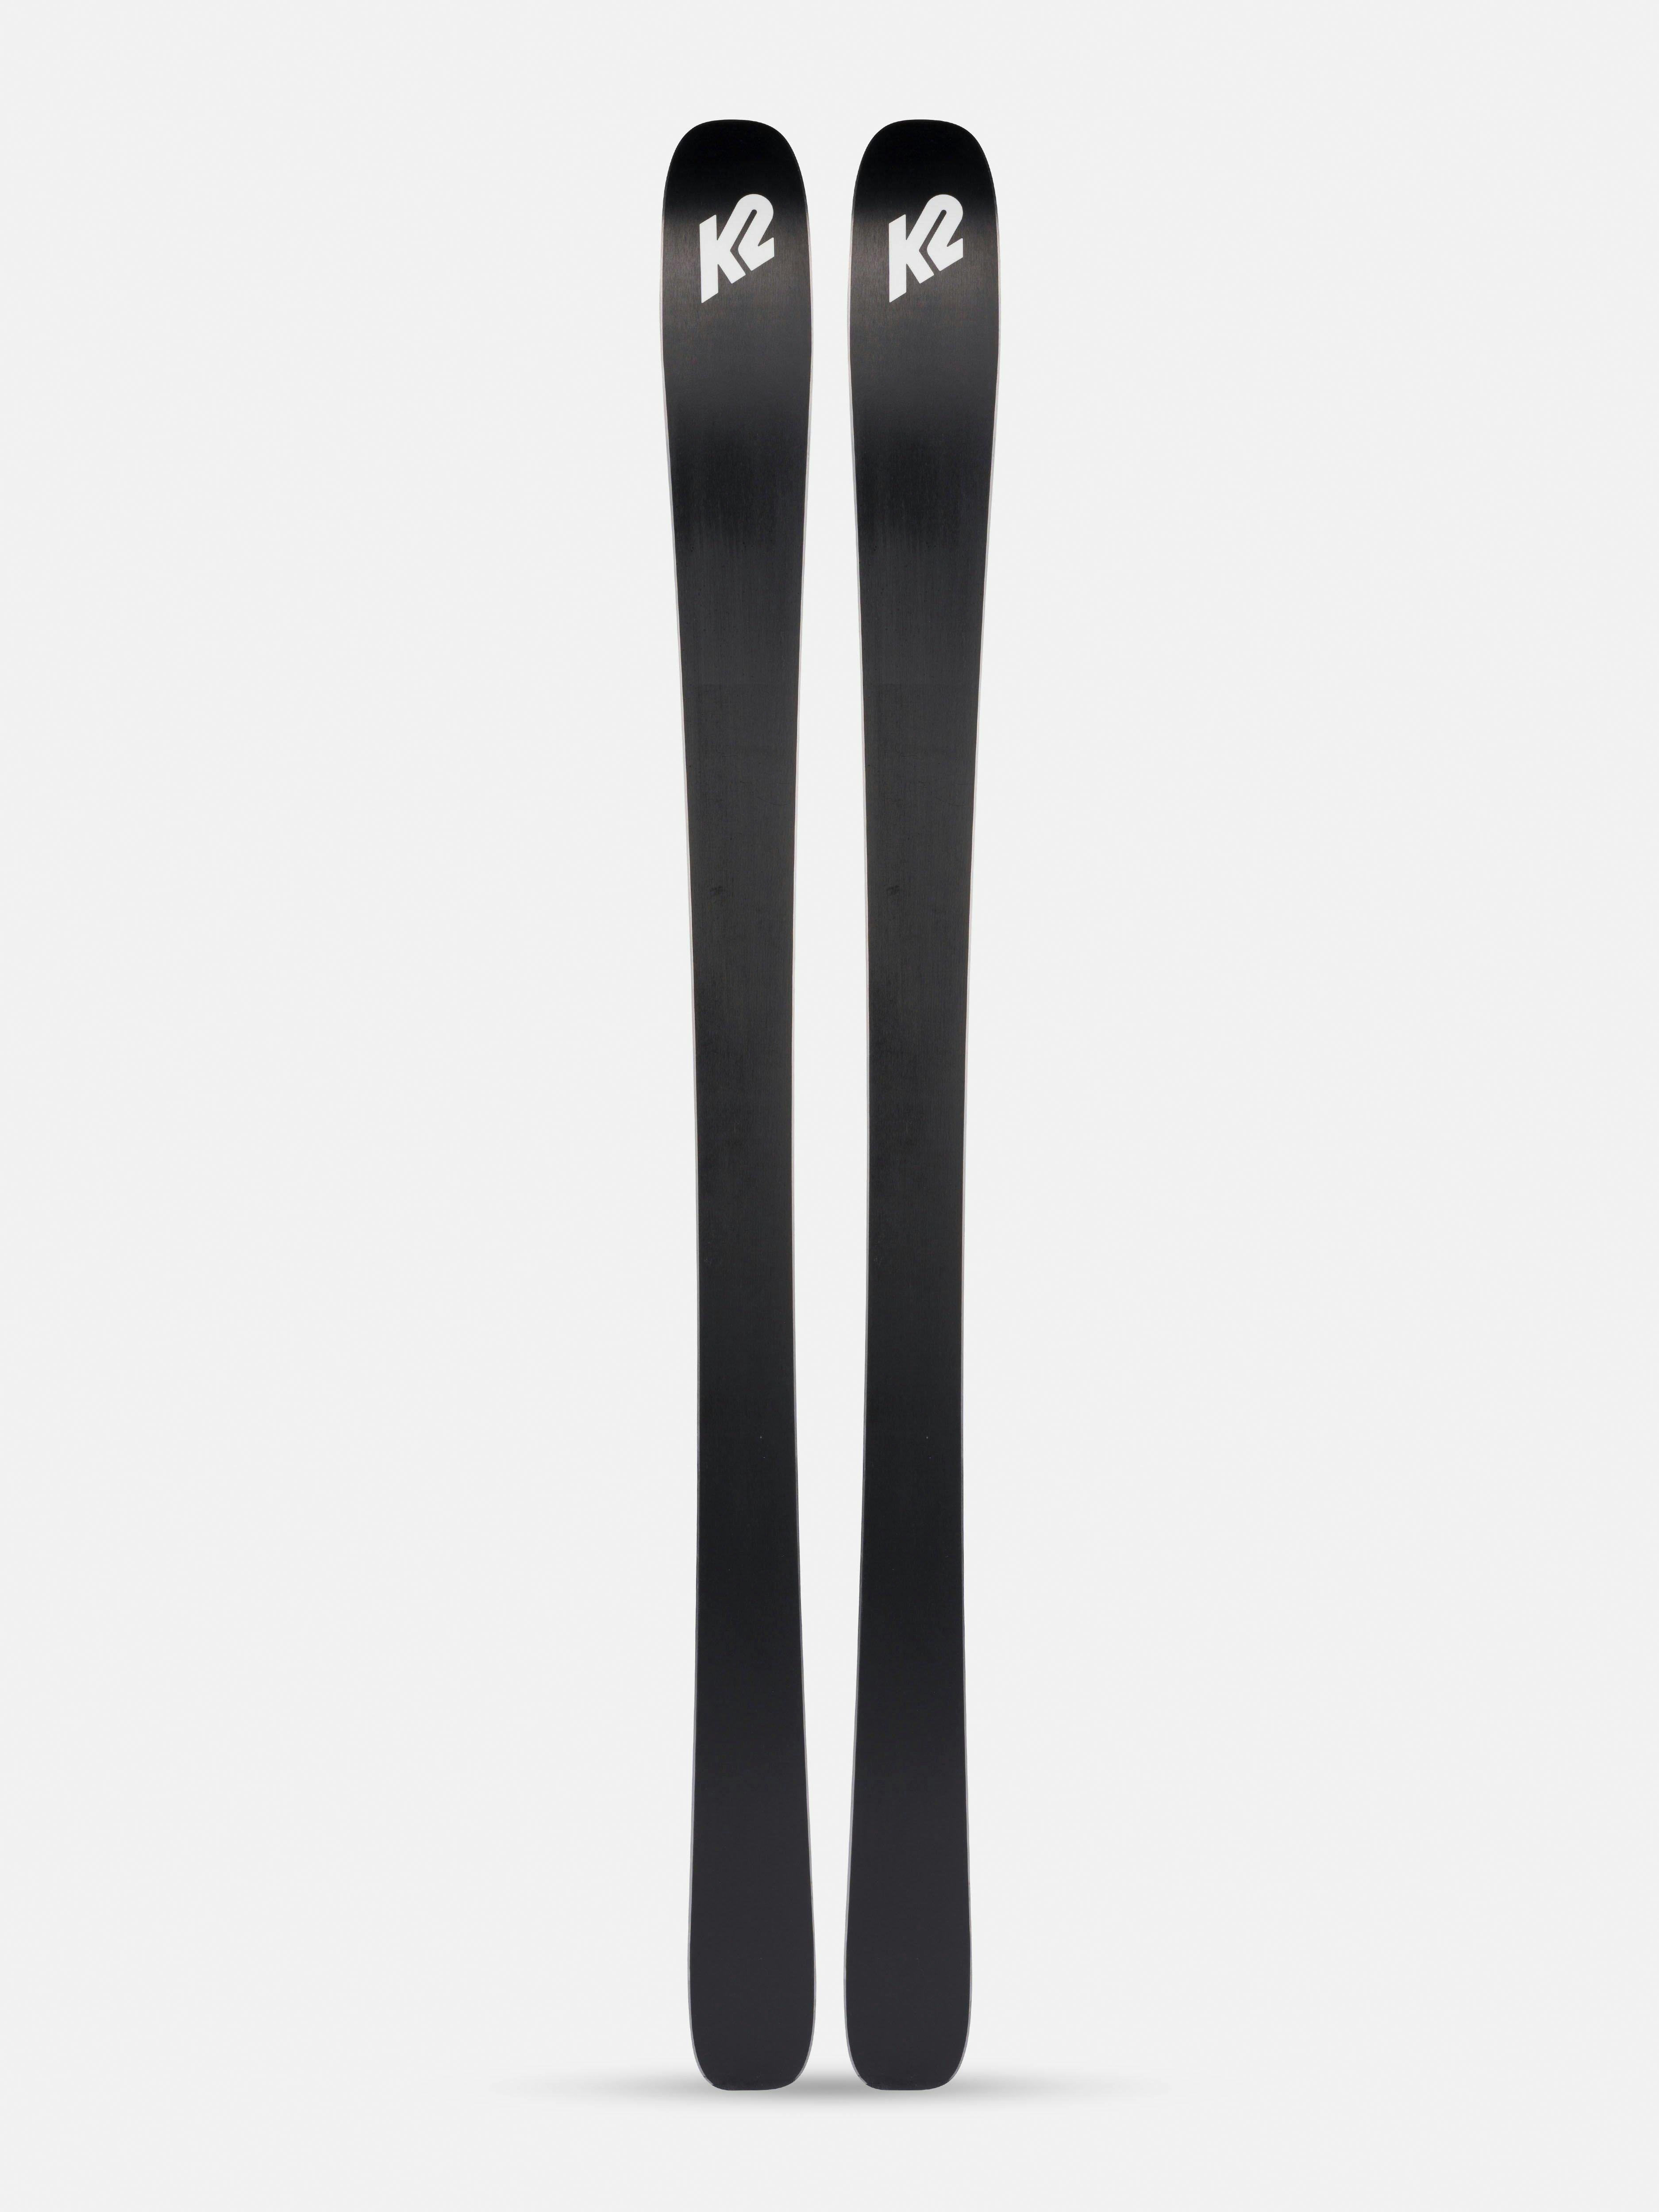 K2 Mindbender 85 Skis · 2022 · 163 cm